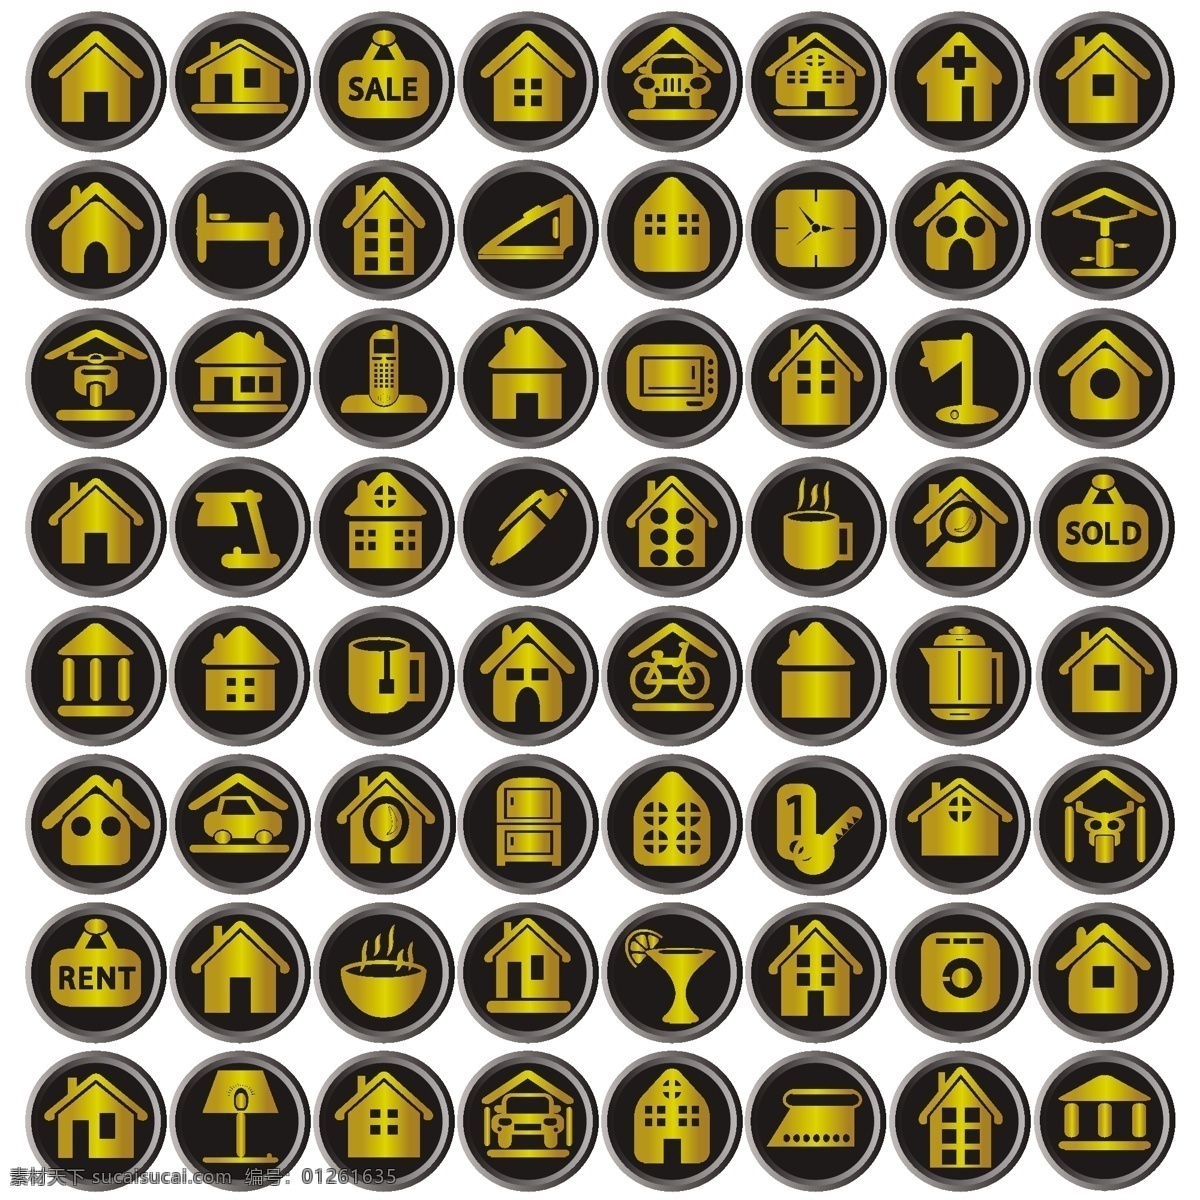 各种图标图片 房子图 杯子 灯 车 金色 标志图标 公共标识标志